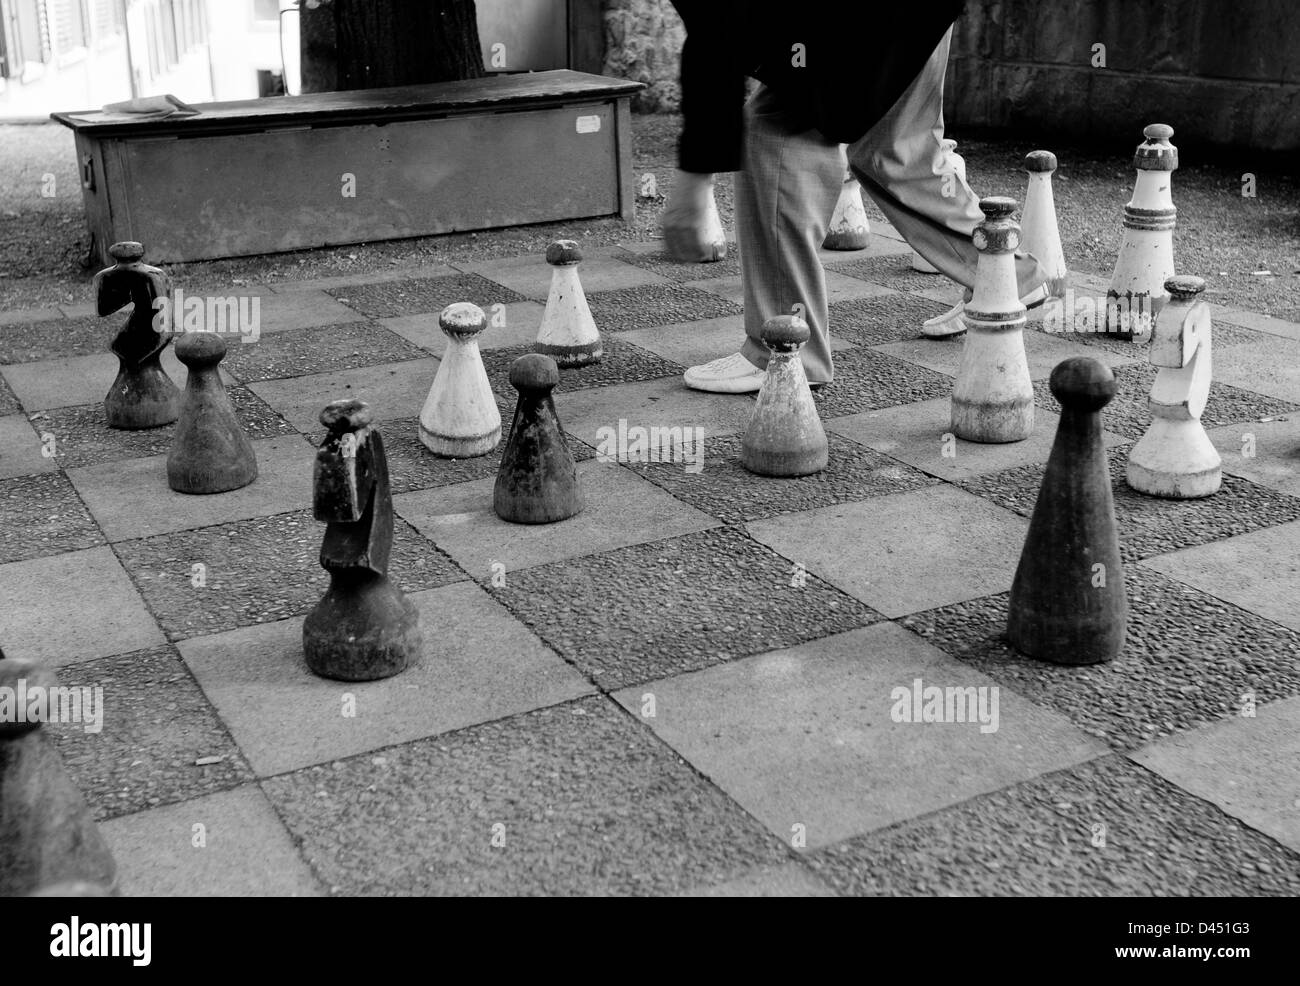 Riesenschach set in den Boden, schwarz / weiß Stockfotografie - Alamy